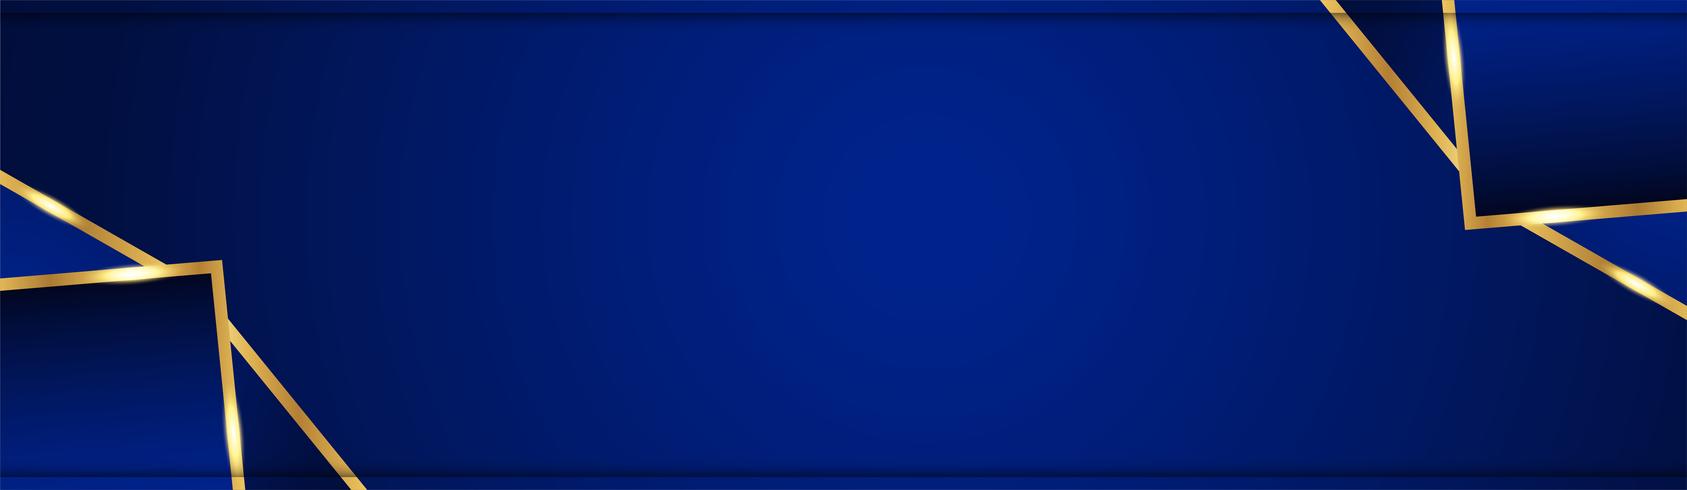 Abstrait bleu dans le style indien premium. Modèle de conception pour la couverture, présentation de l&#39;entreprise, bannière Web, faire-part de mariage et emballage de luxe. Illustration vectorielle avec bordure dorée vecteur